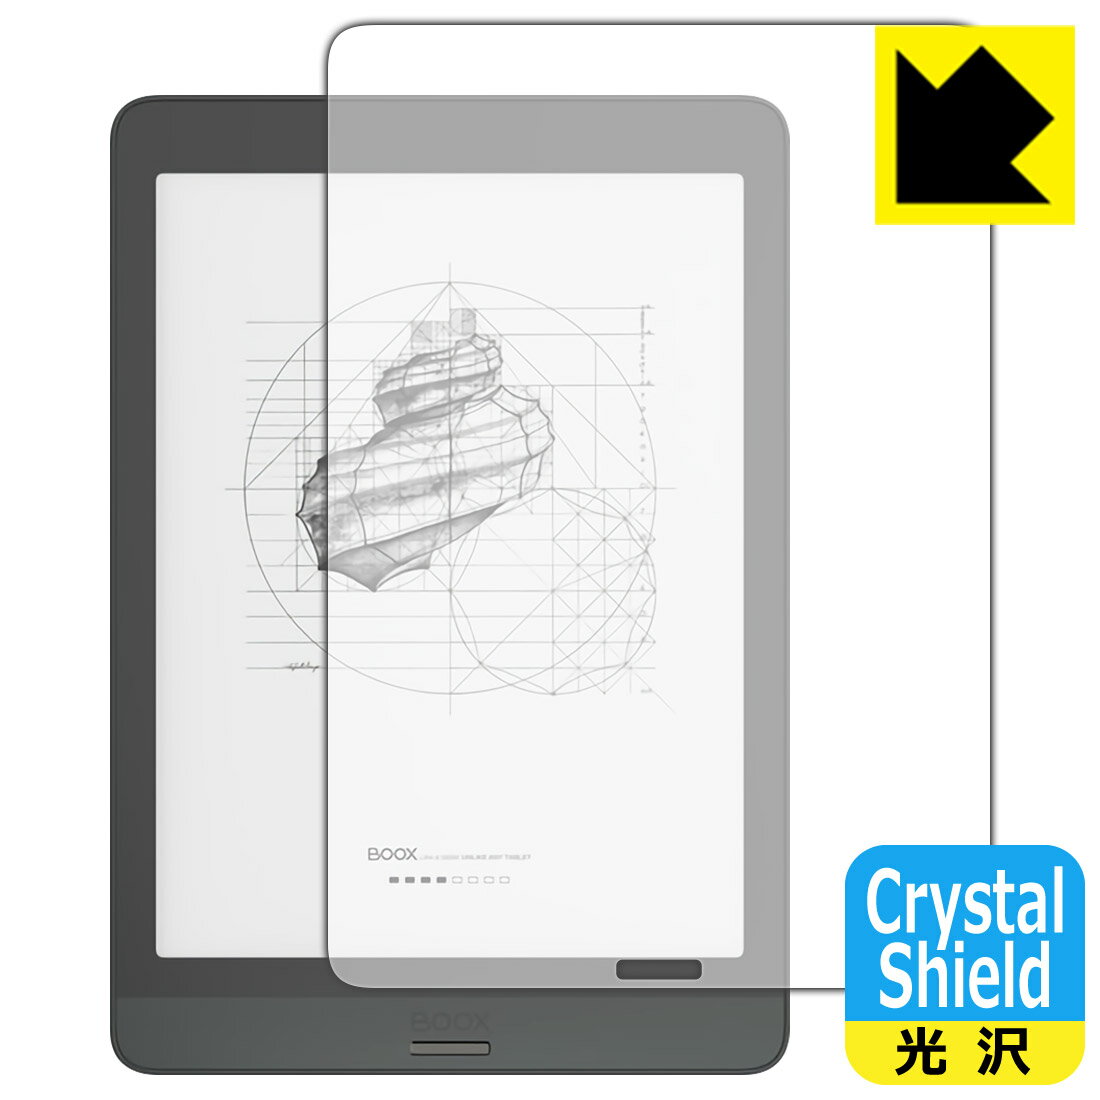 Crystal Shield Onyx BOOX Nova3 (3Zbg) { А